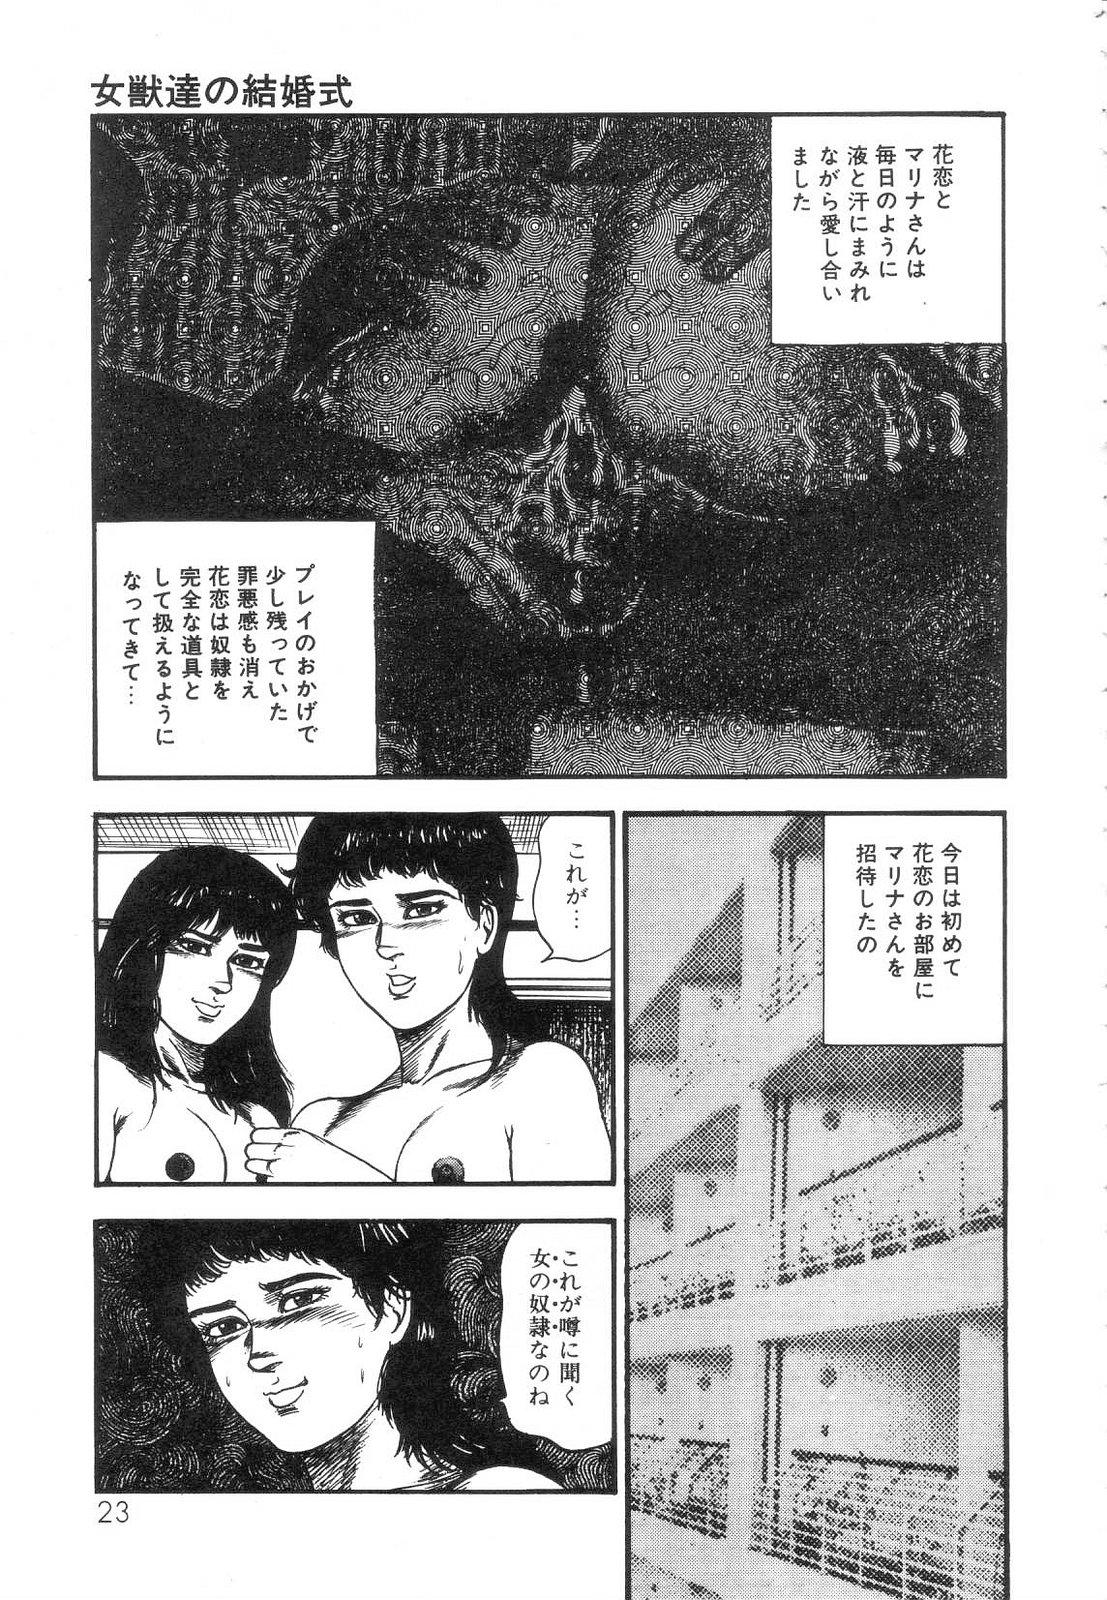 Shiro no Mokushiroku Vol. 5 - Ninshoujo Erika no Shou 24